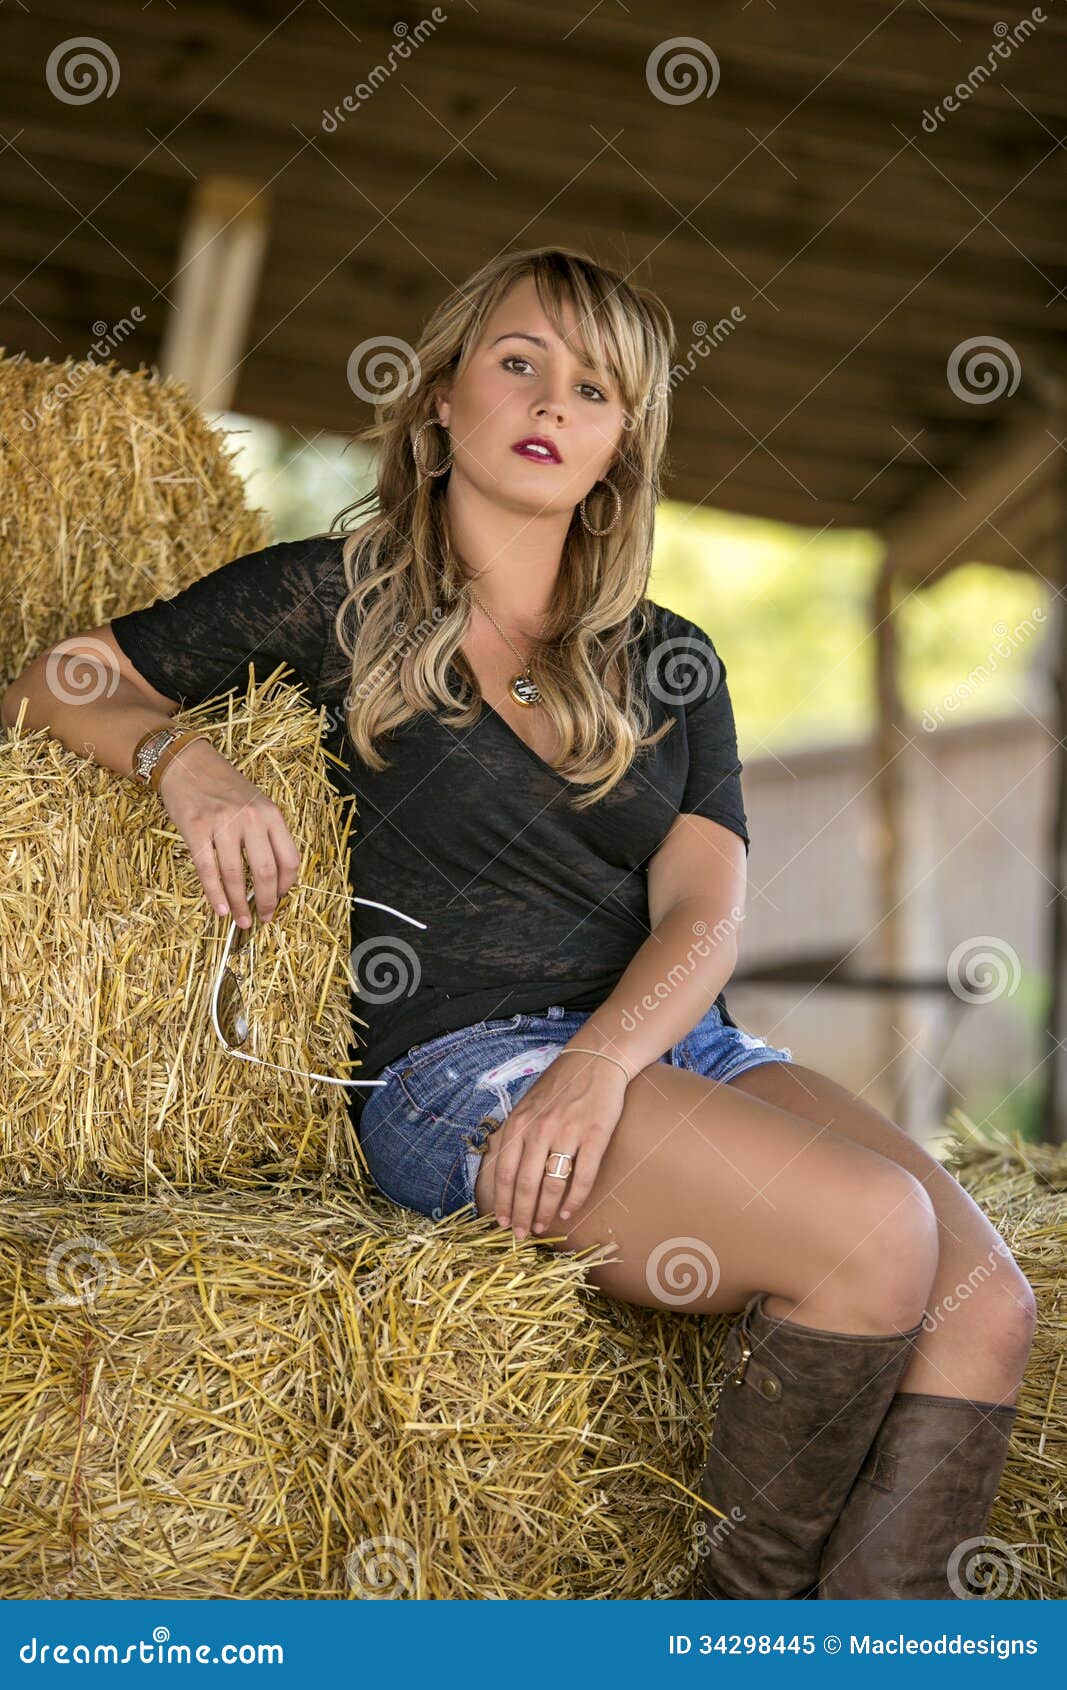 Glamorous Blonde Woman Posing Stock Image - Image of woman, glamorous ...